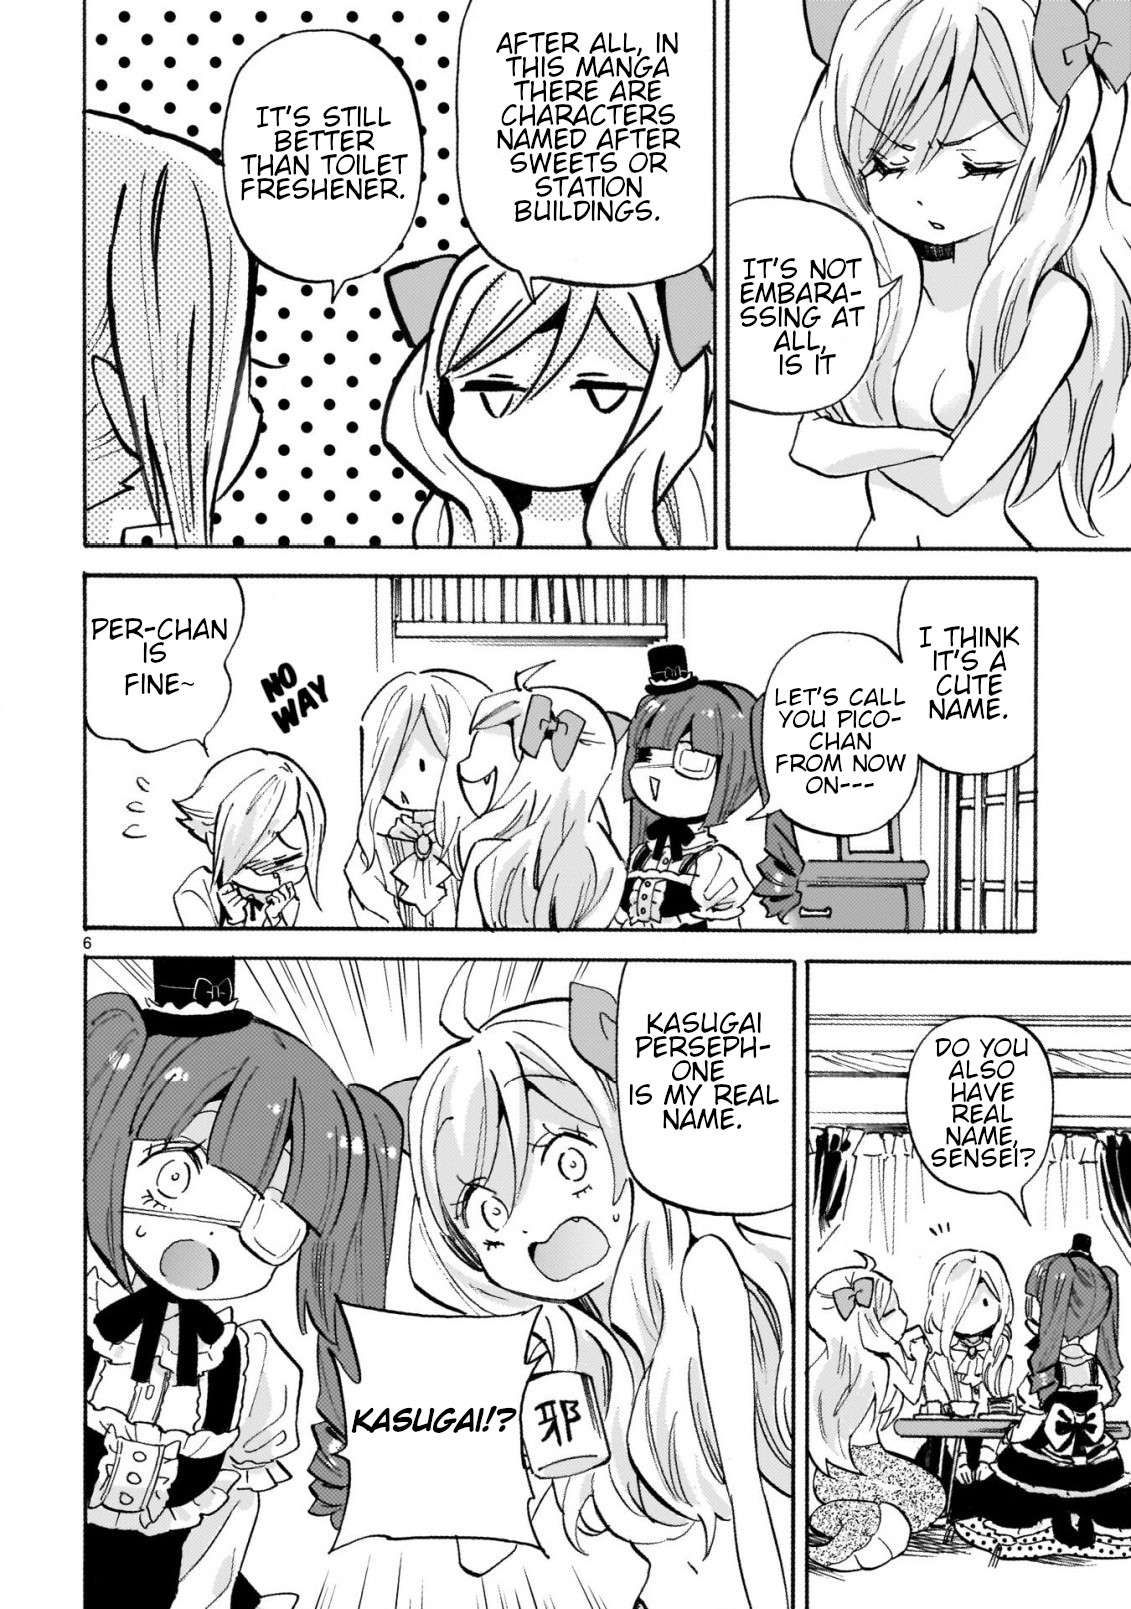 Jashin-chan Dropkick chapter 247 page 6